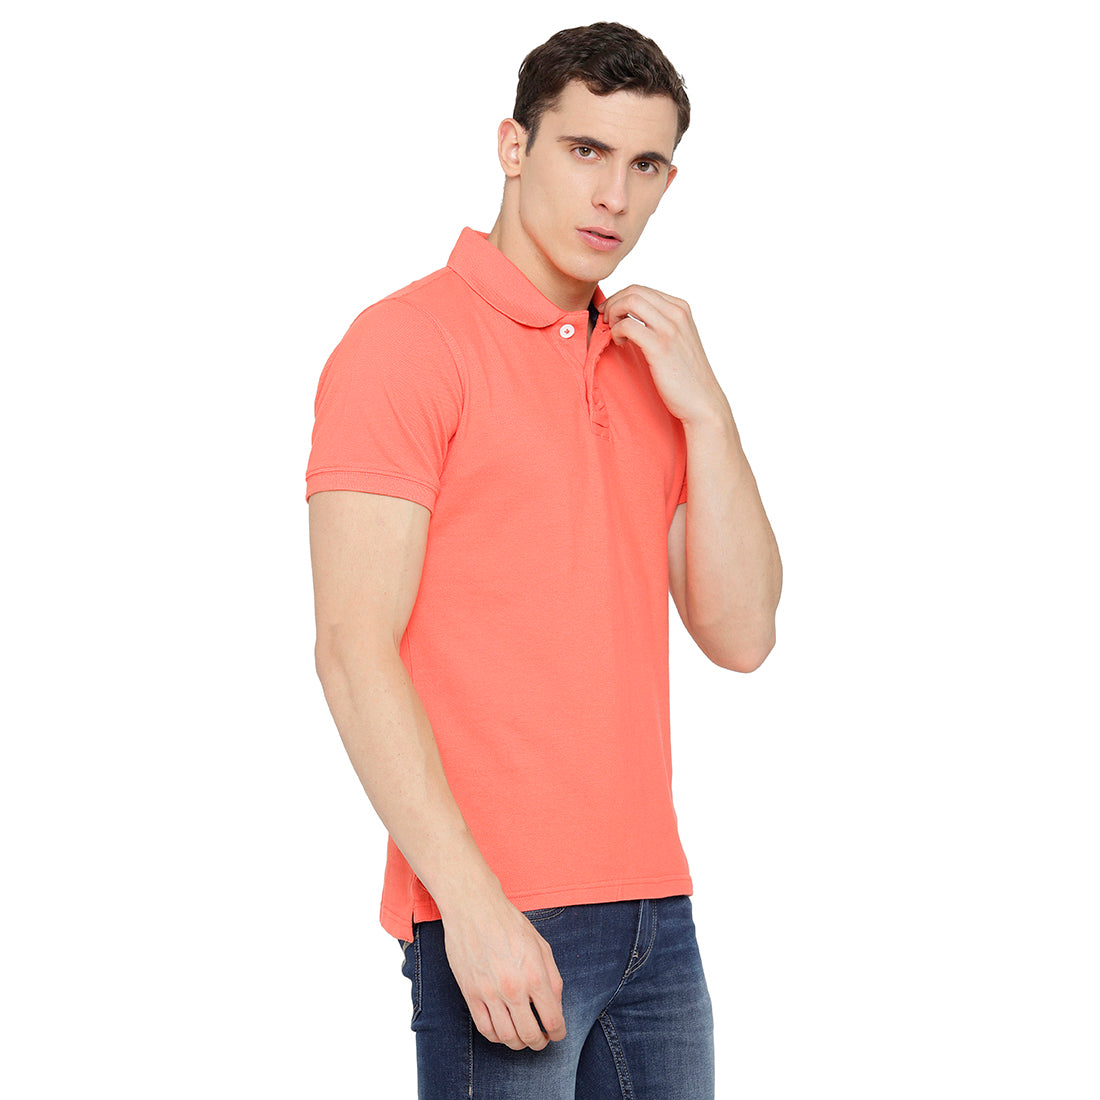 Peach color Polo T-Shirt pique